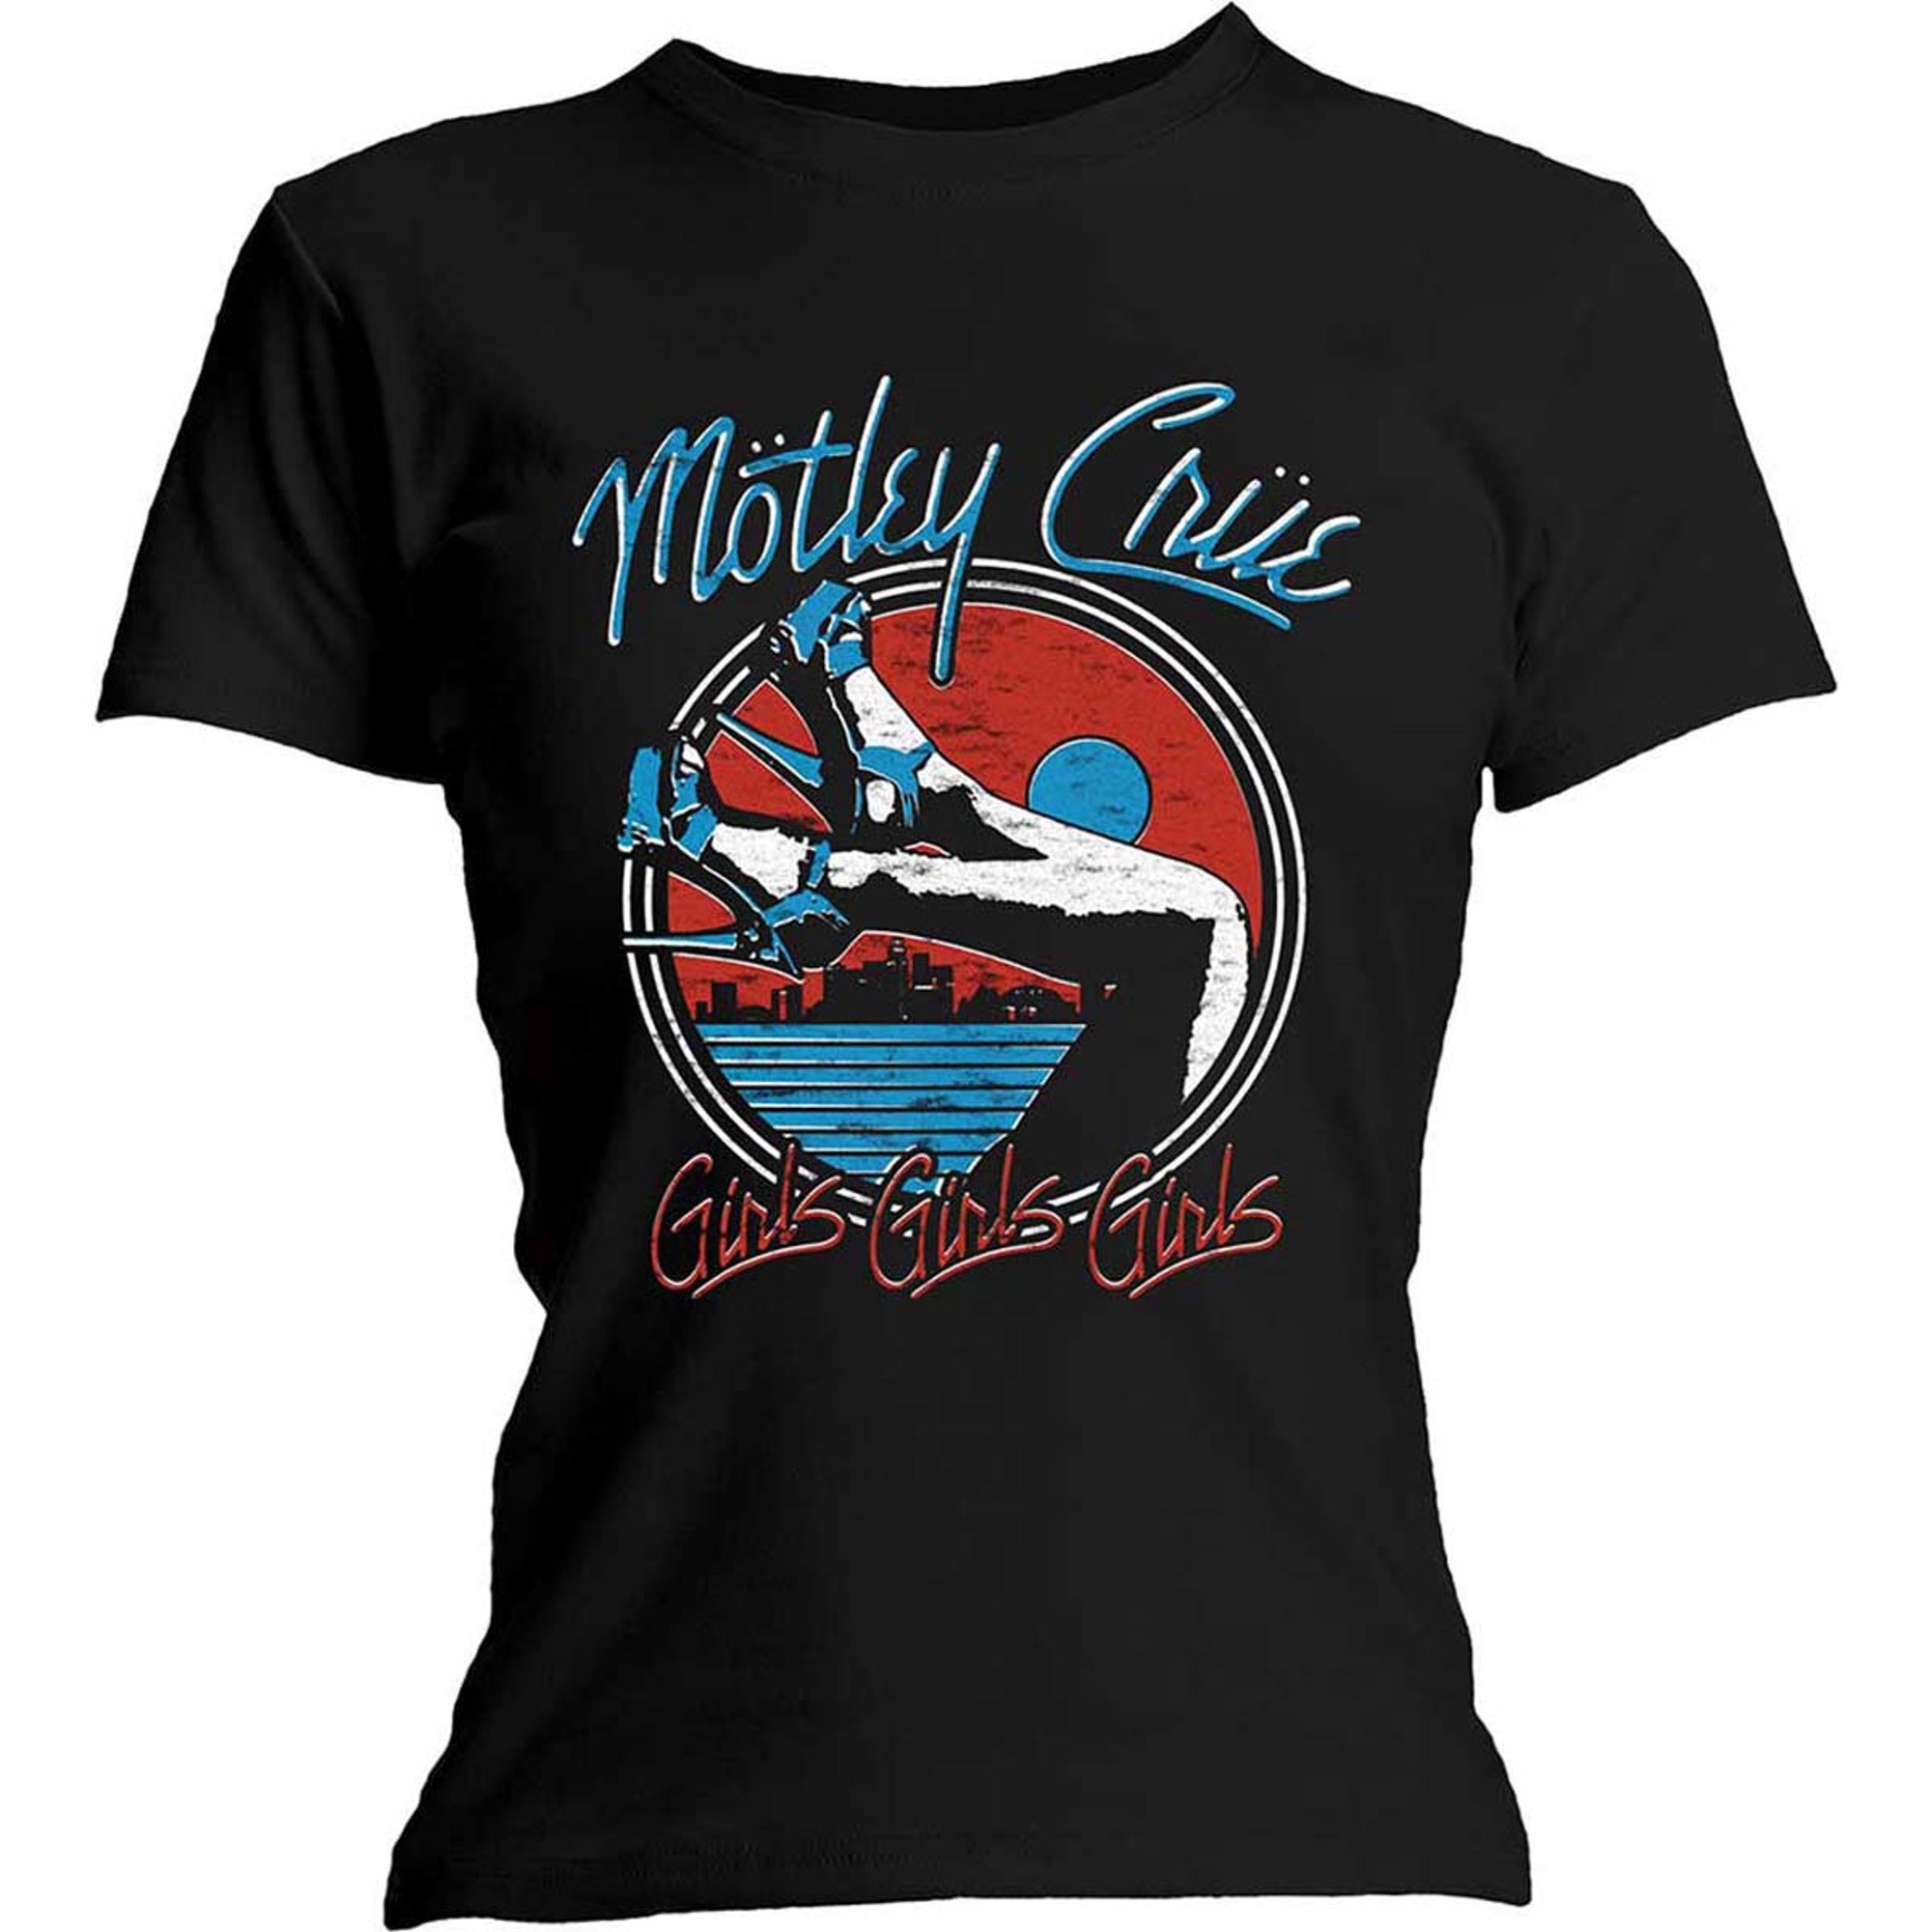 Discover Maglietta T-Shirt Motley Crue Band Per Uomo Donna Bambini - Rock Off Motley Crue